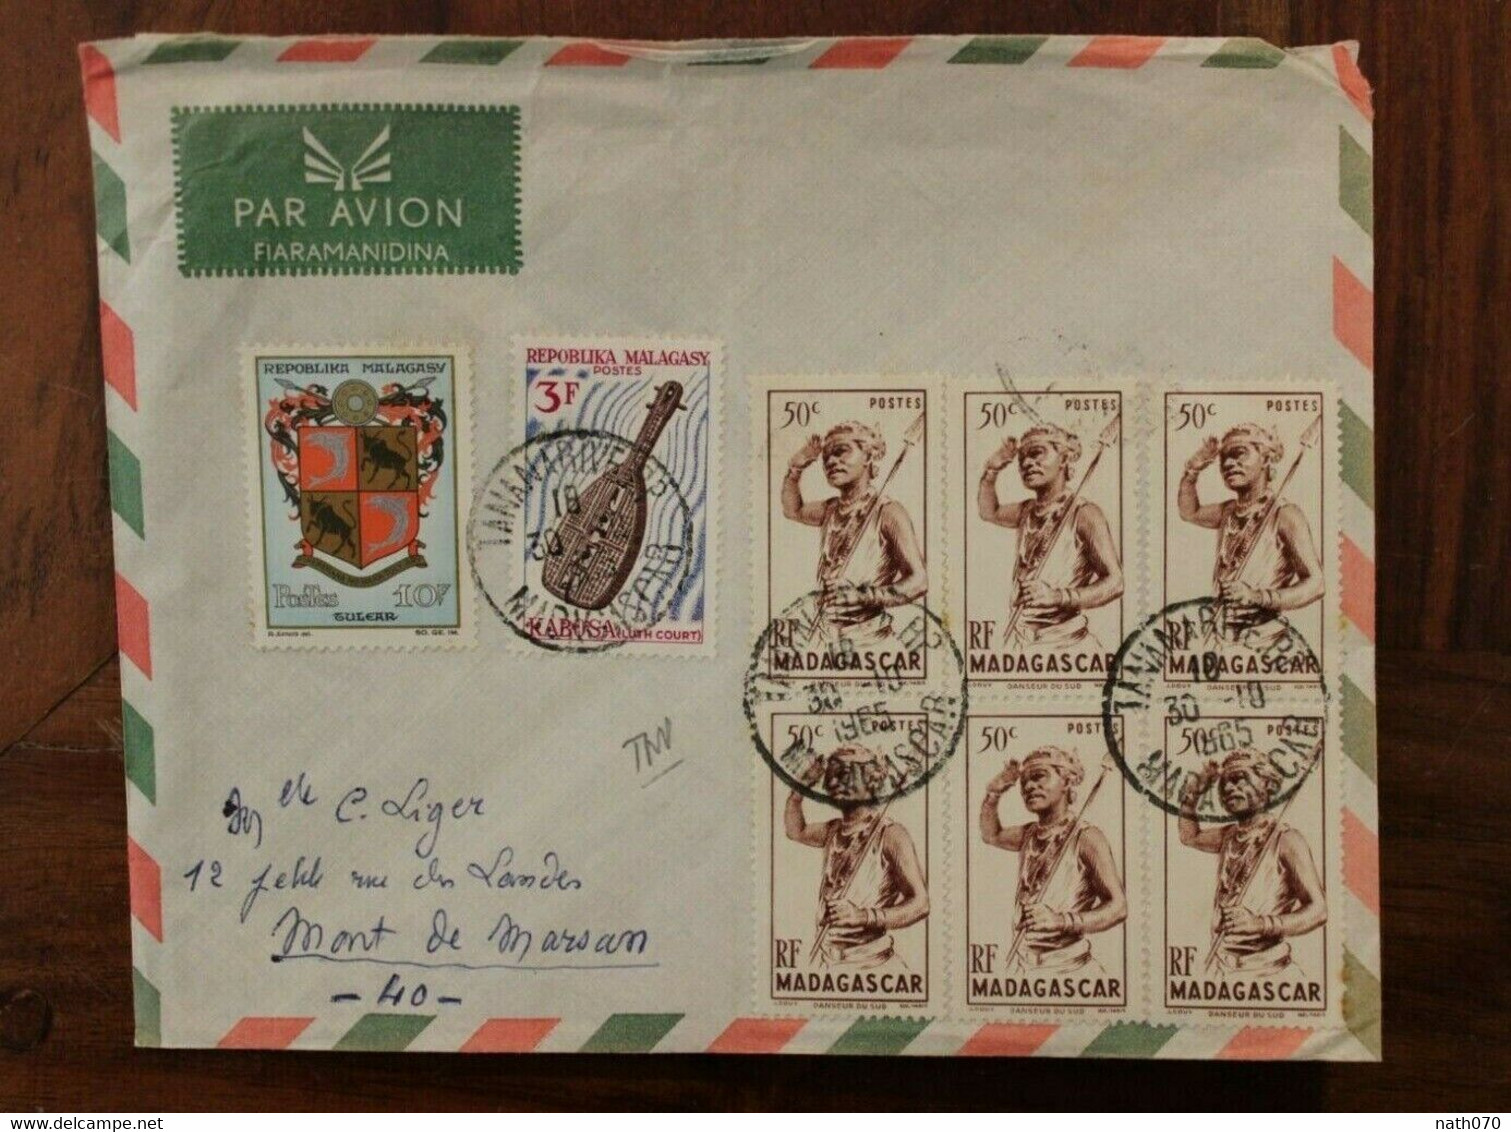 Madagascar 1965 Fiaramandina France Mont De Marsan Cover Bloc - Briefe U. Dokumente